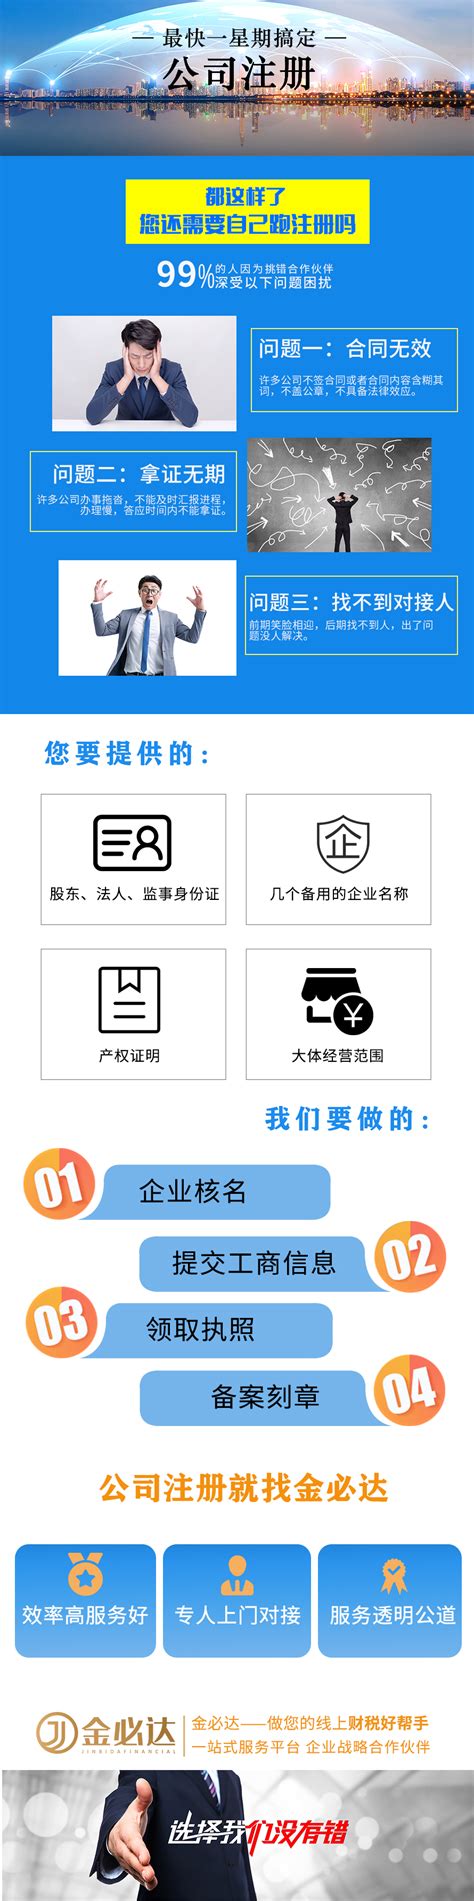 广州聚会算科技有限公司 - 注册公司|代理记账|创业服务平台-聚会算官网